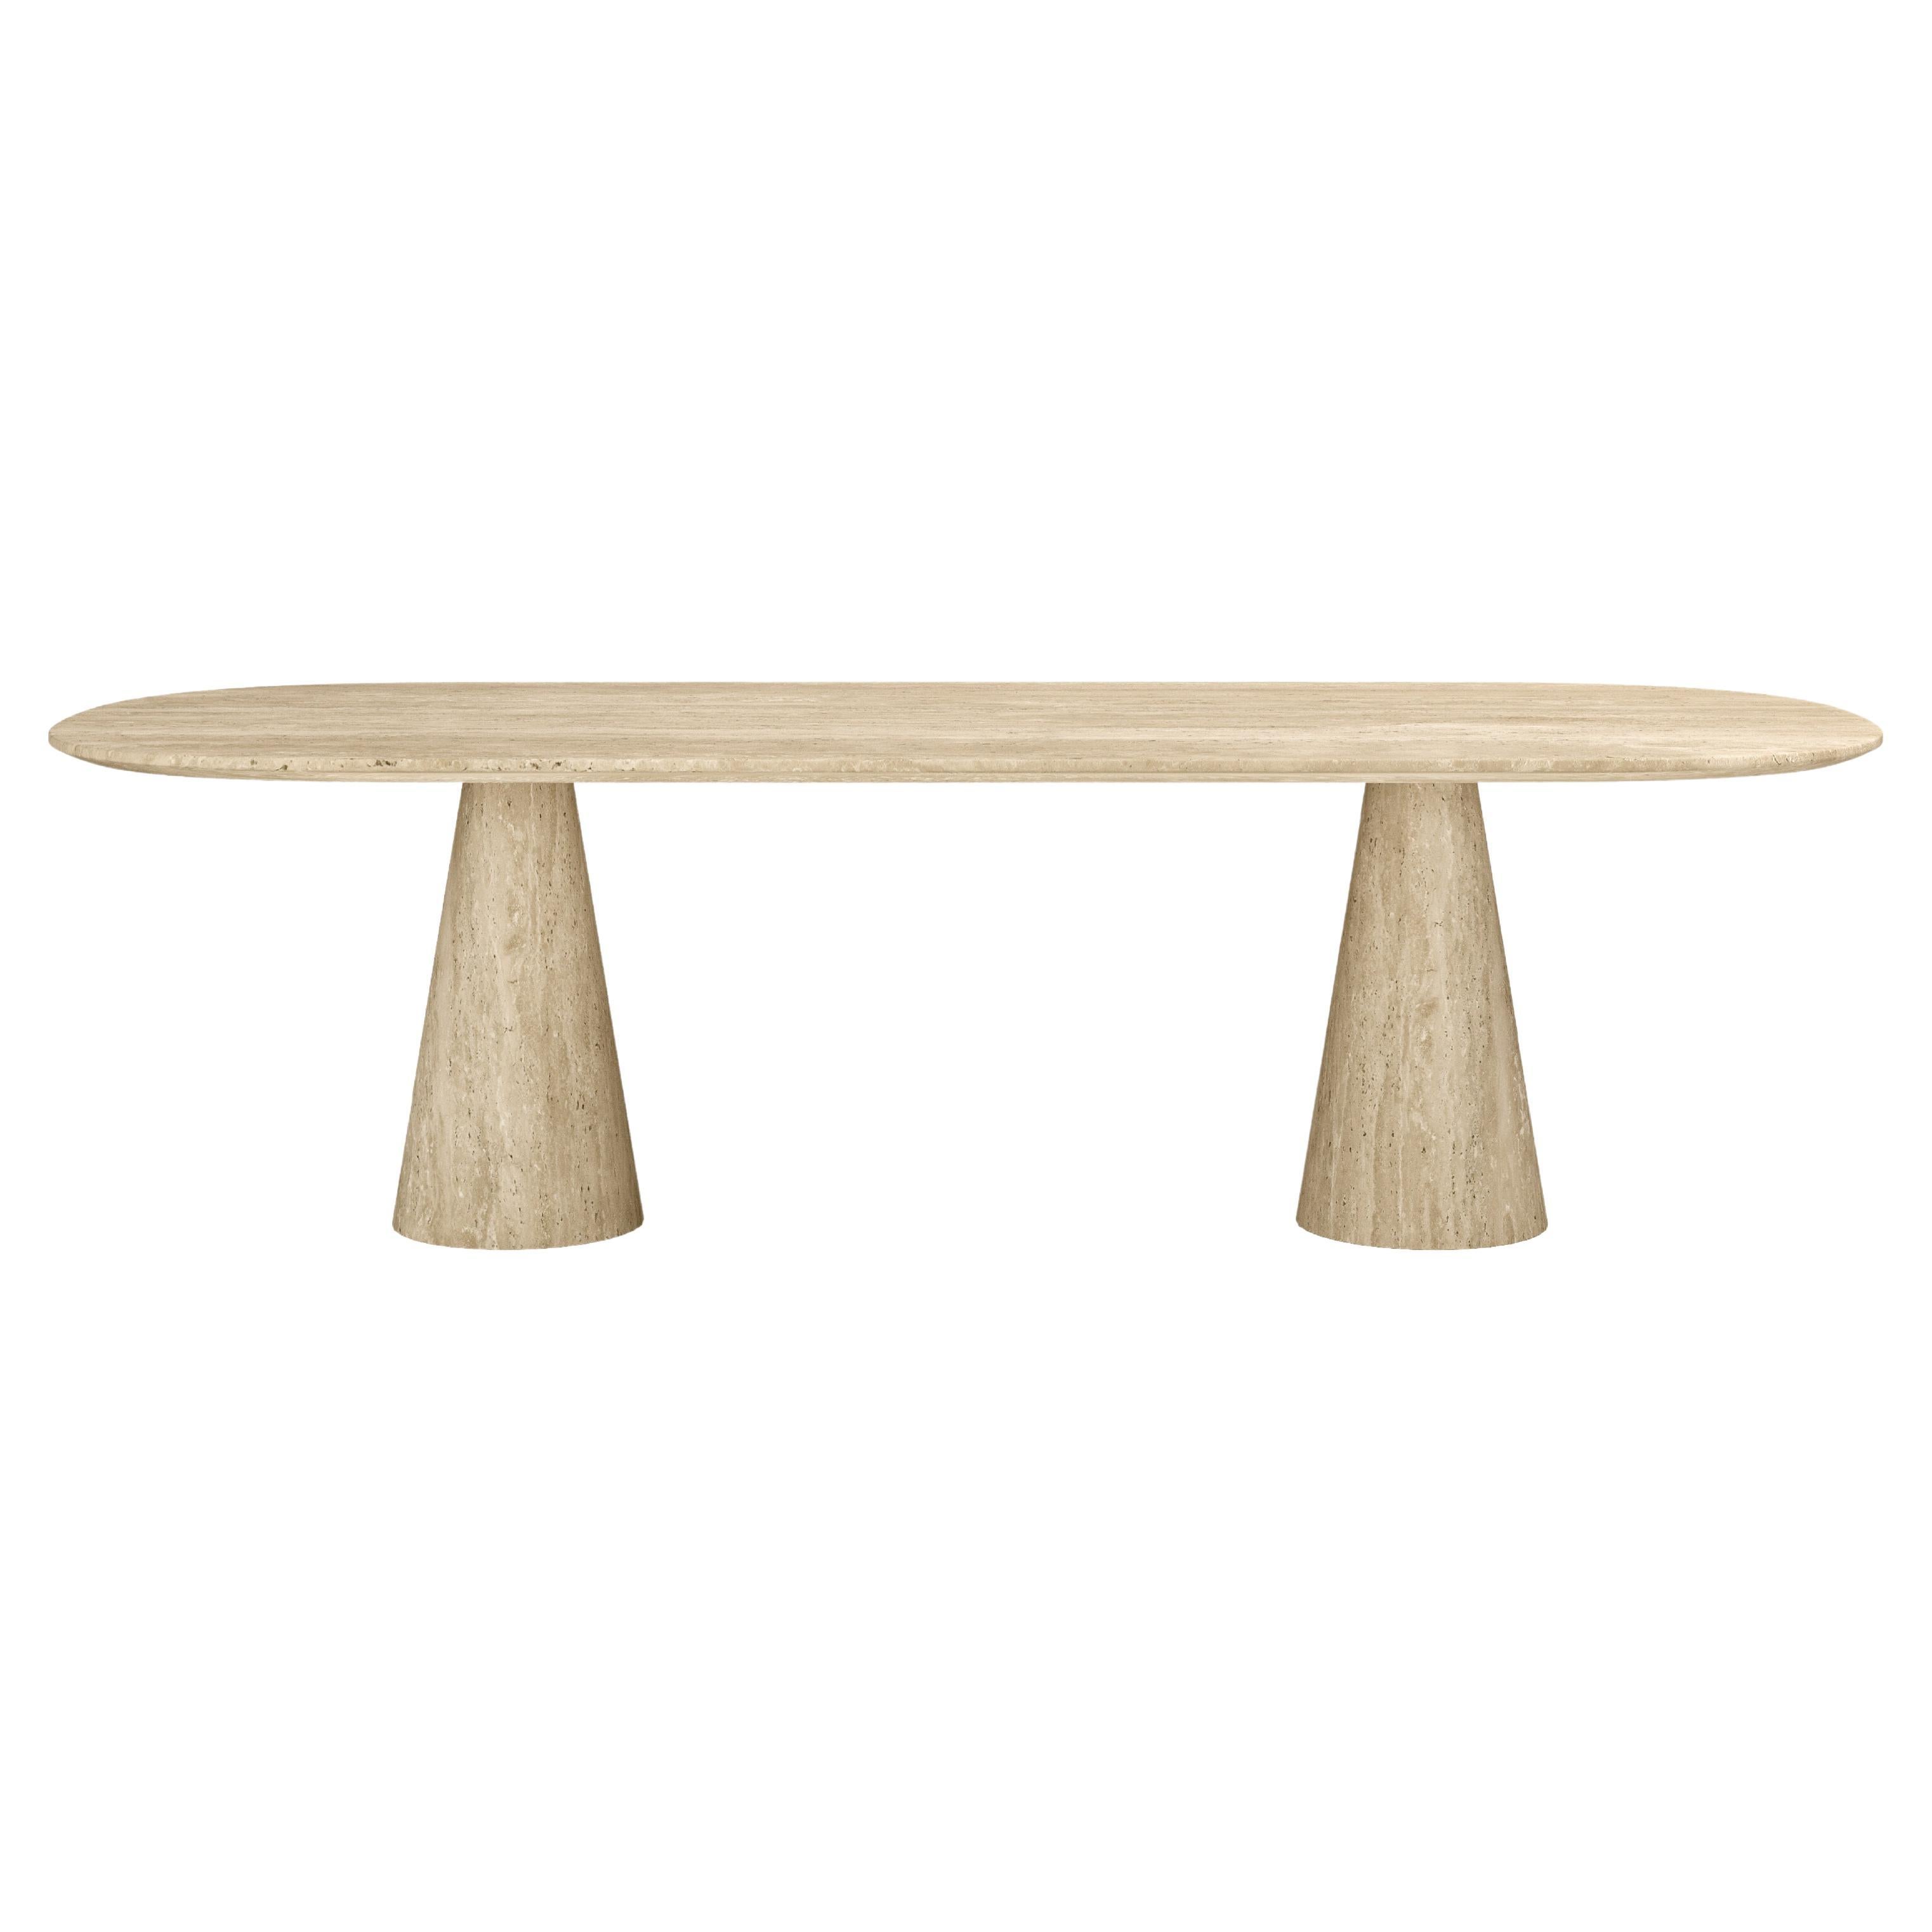 FORM(LA) Cono Oval Dining Table 96”L x 42”W x 30”H Travertino Crema VC For Sale